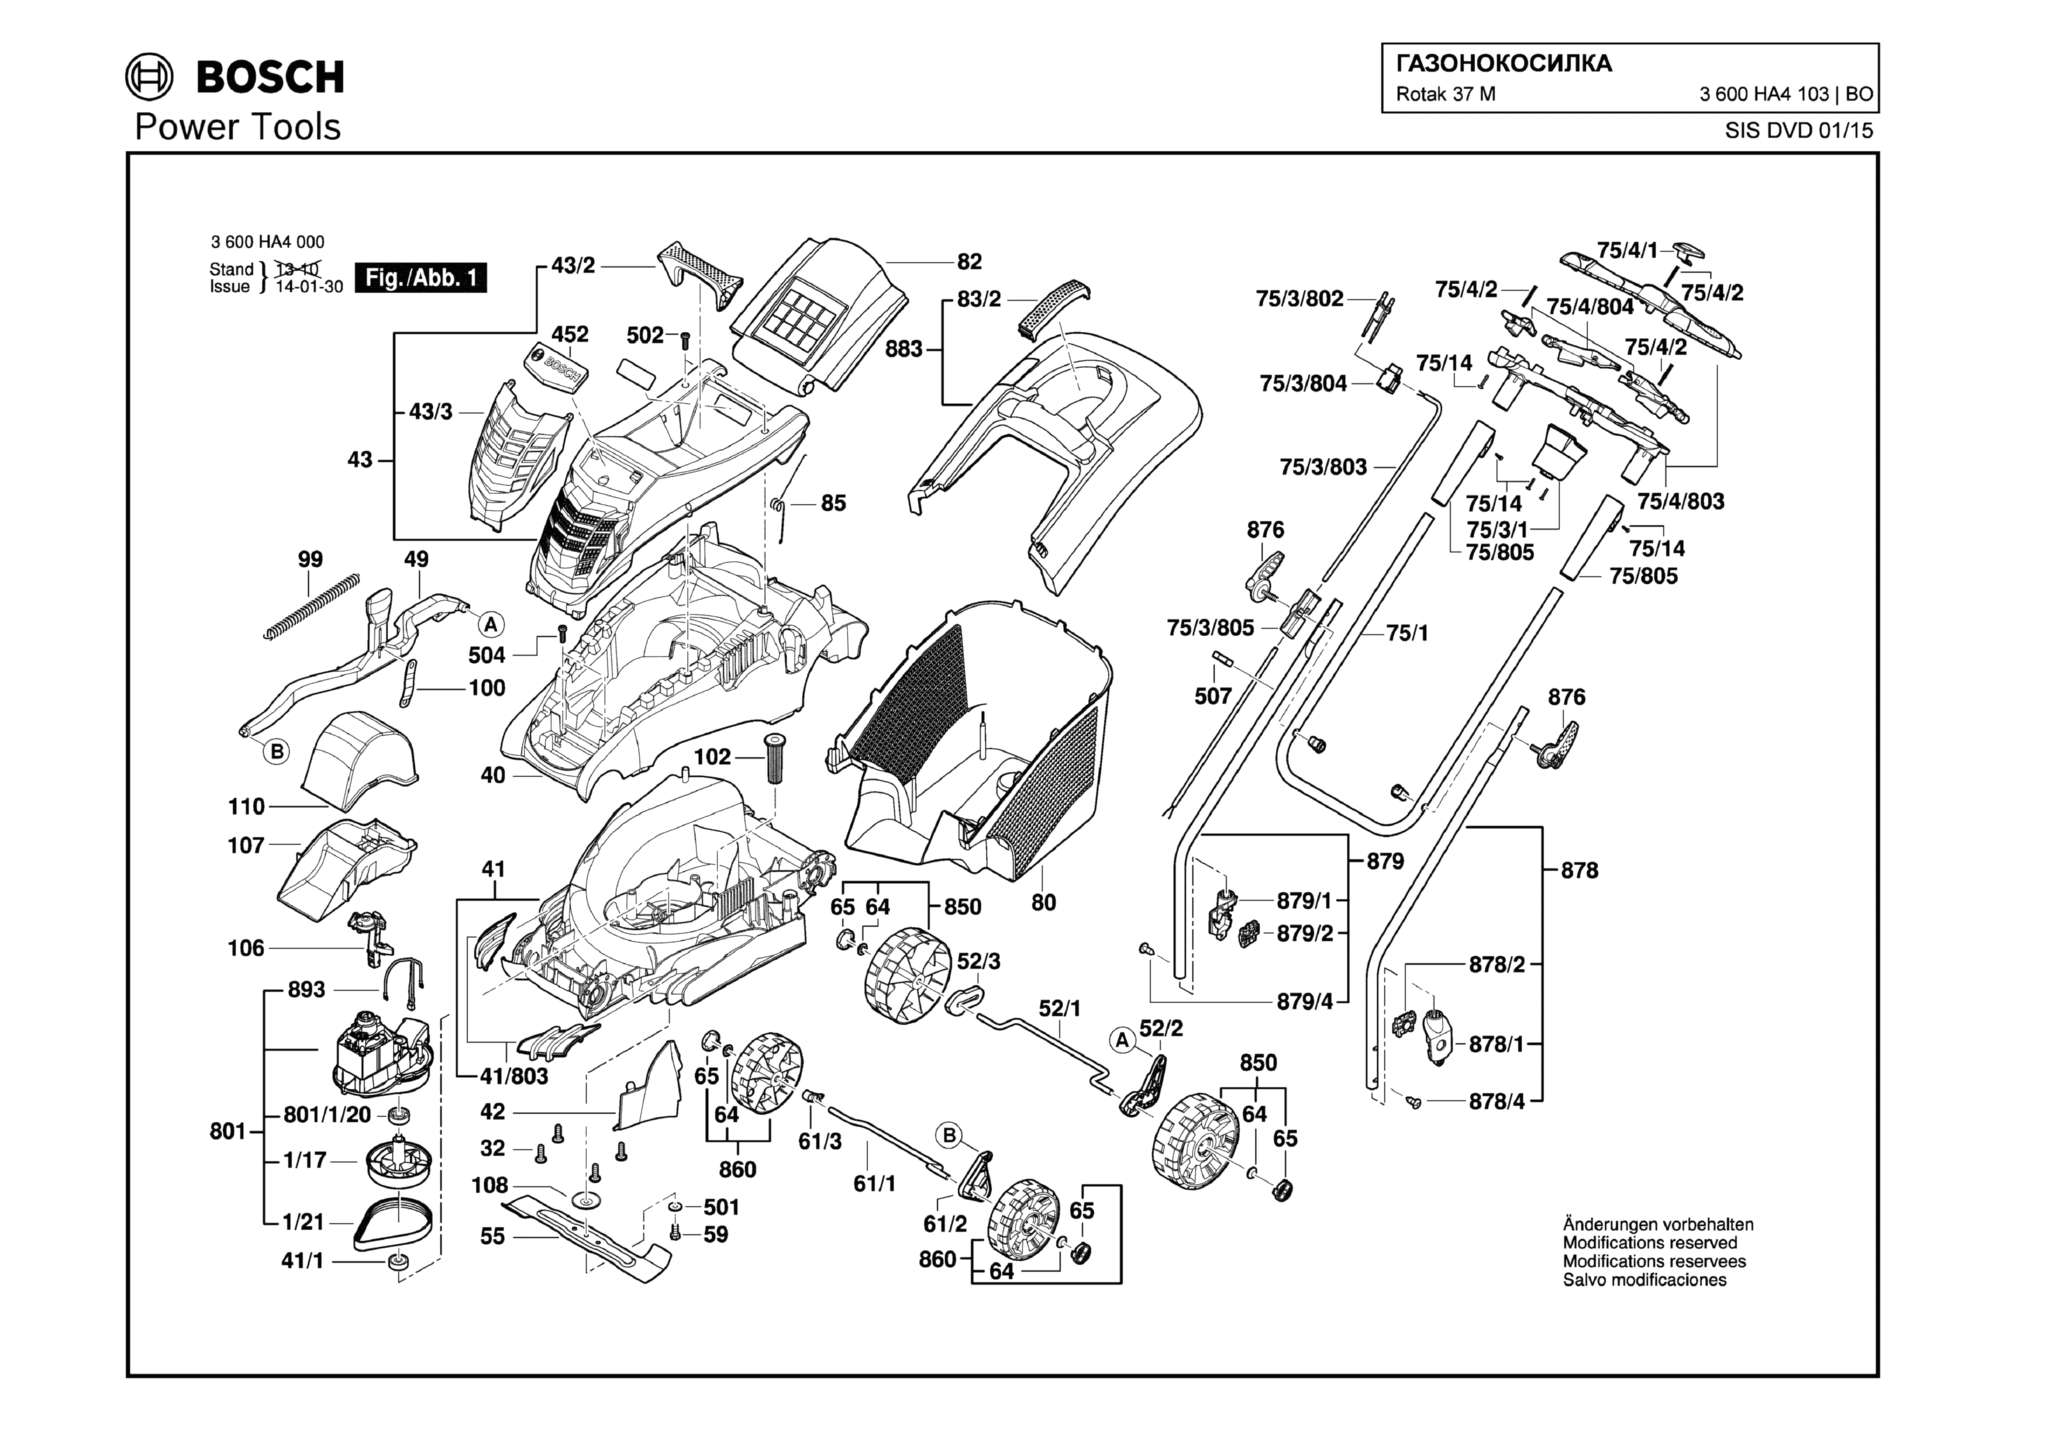 Запчасти, схема и деталировка Bosch ROTAK 37 M (ТИП 3600HA4103)